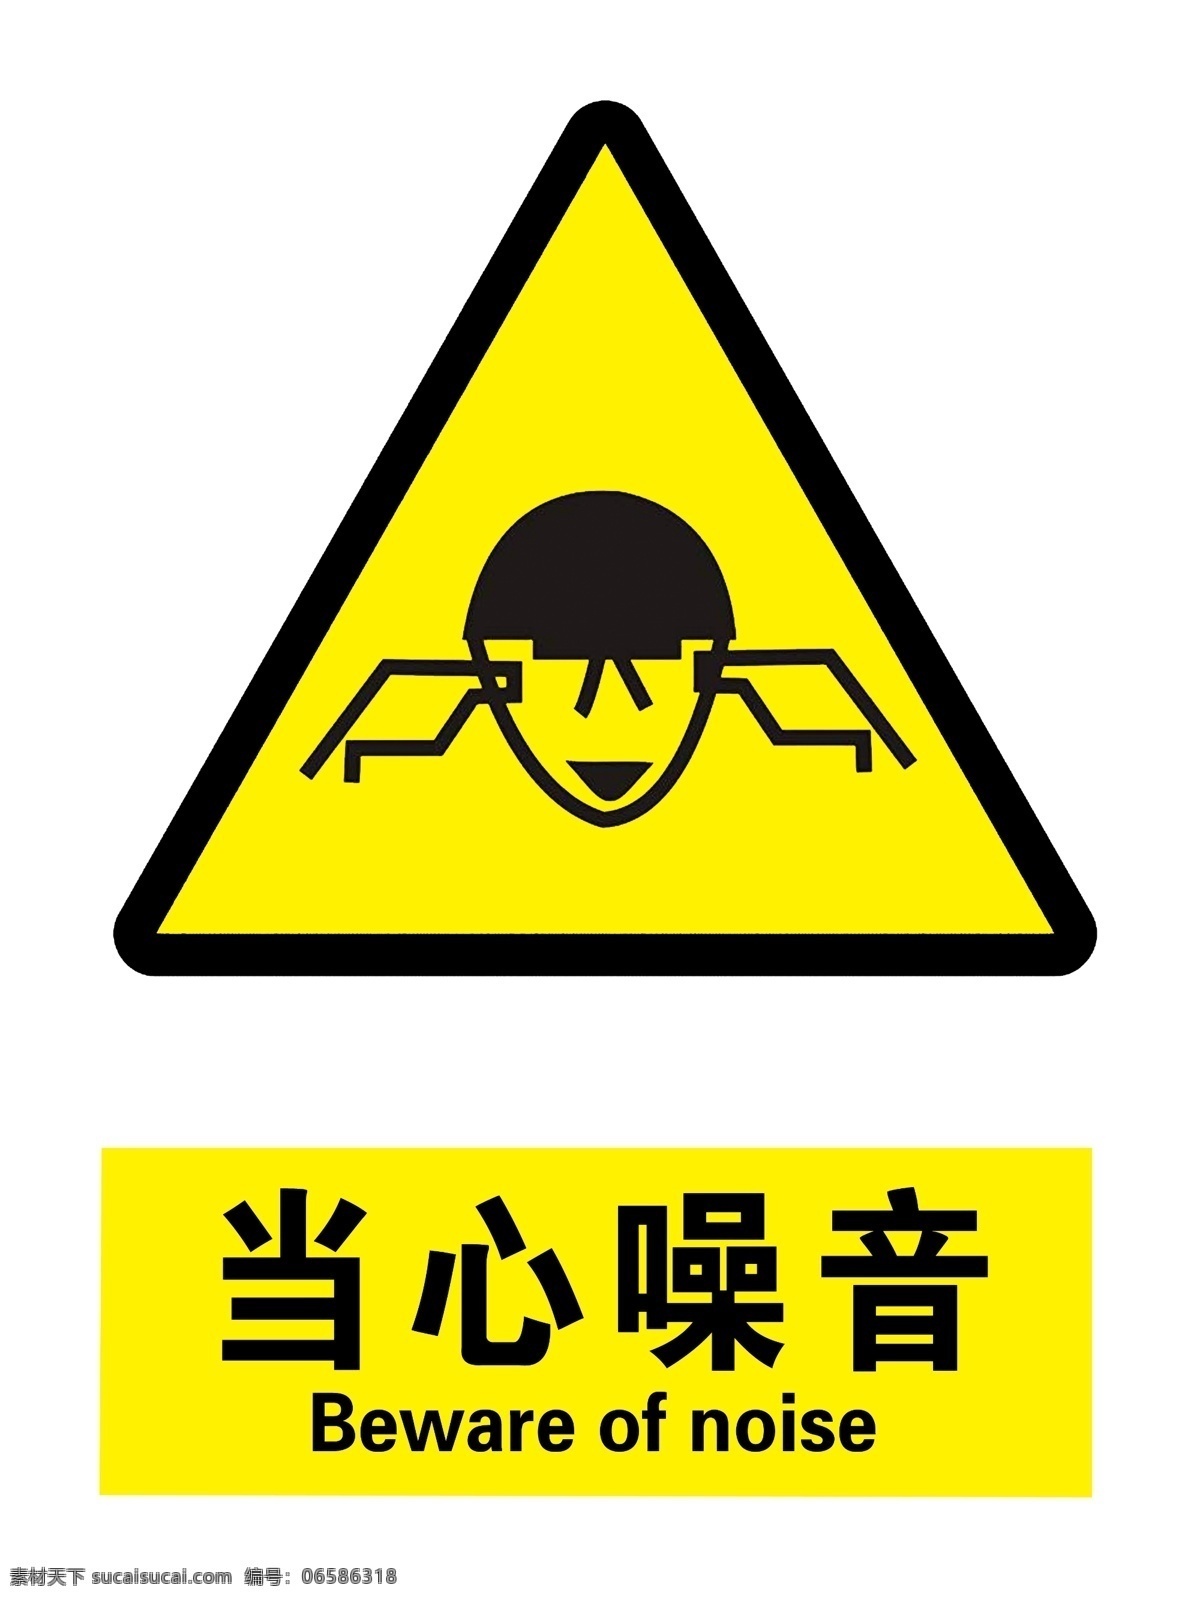 当心噪音 当心 噪音 小心 杂音 高声 标识 警示 标志图标 公共标识标志